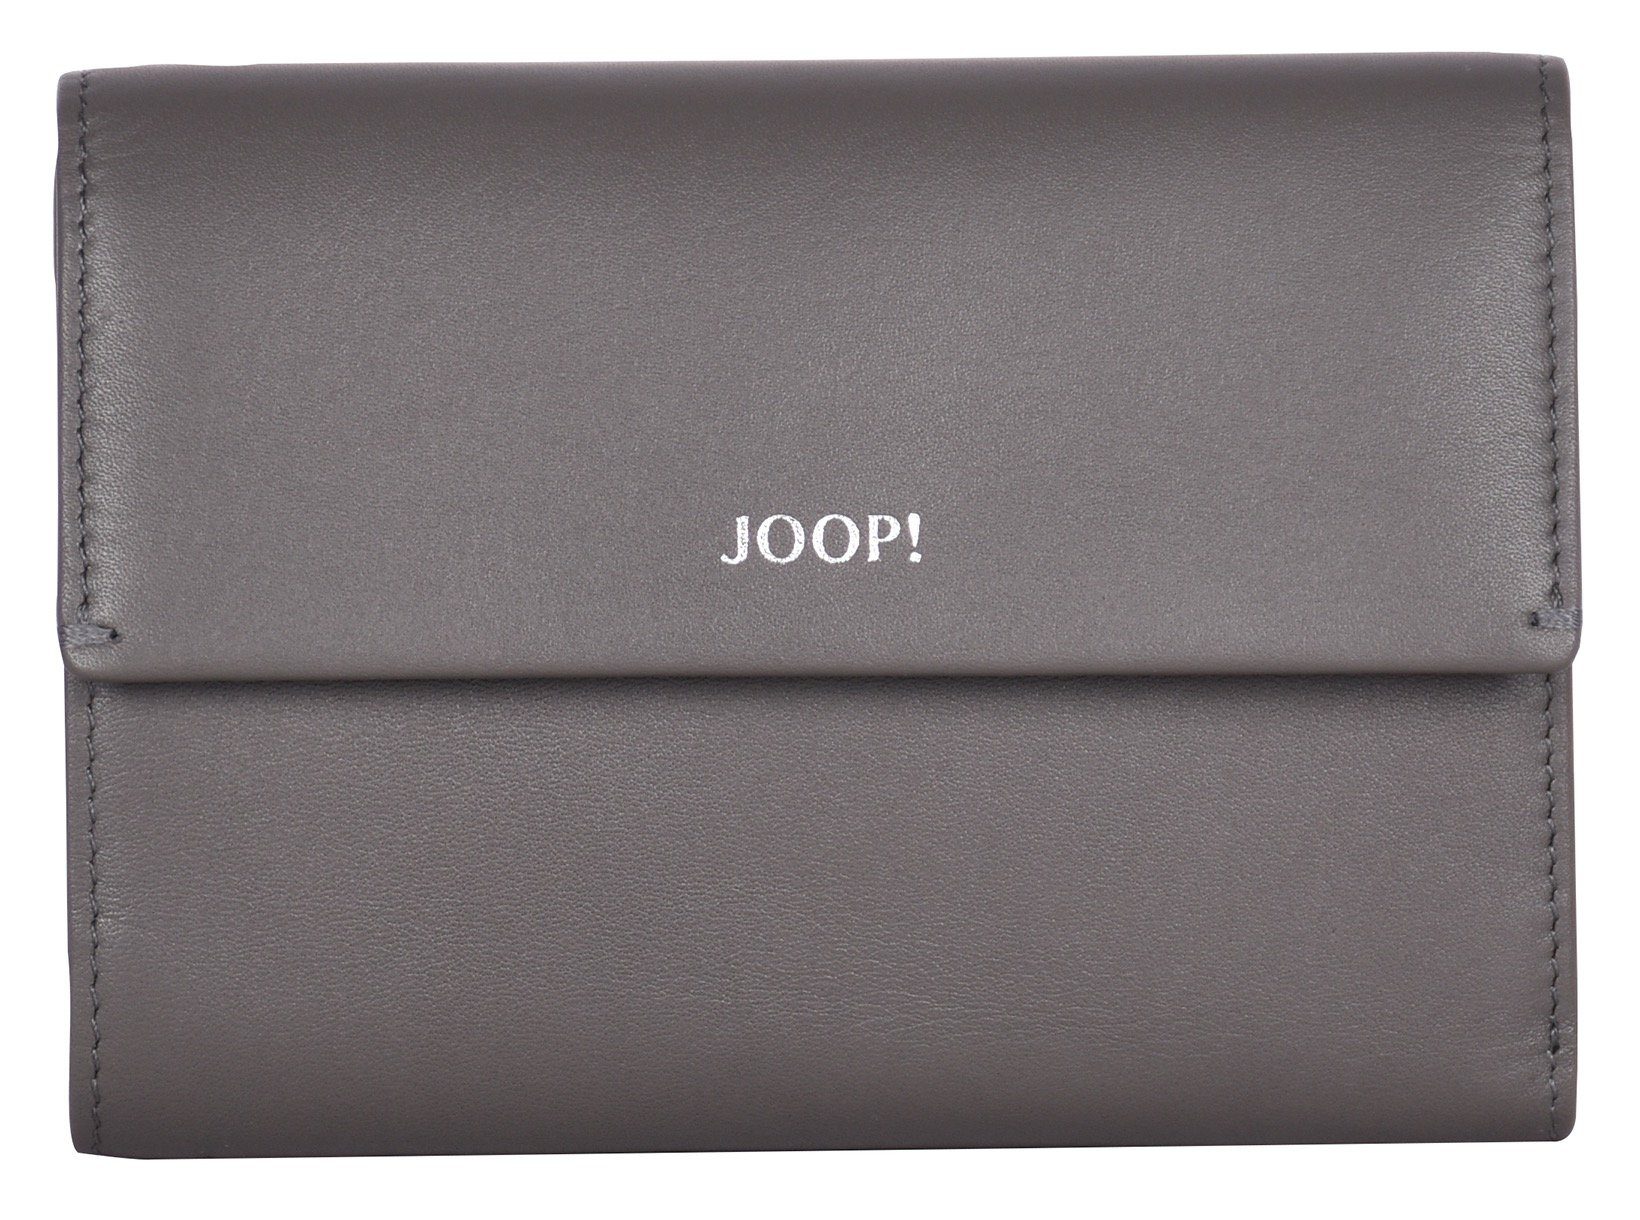 Joop! Geldbörse sofisticato 1.0 cosma purse in darkgrey mh10f, schlichtem Design